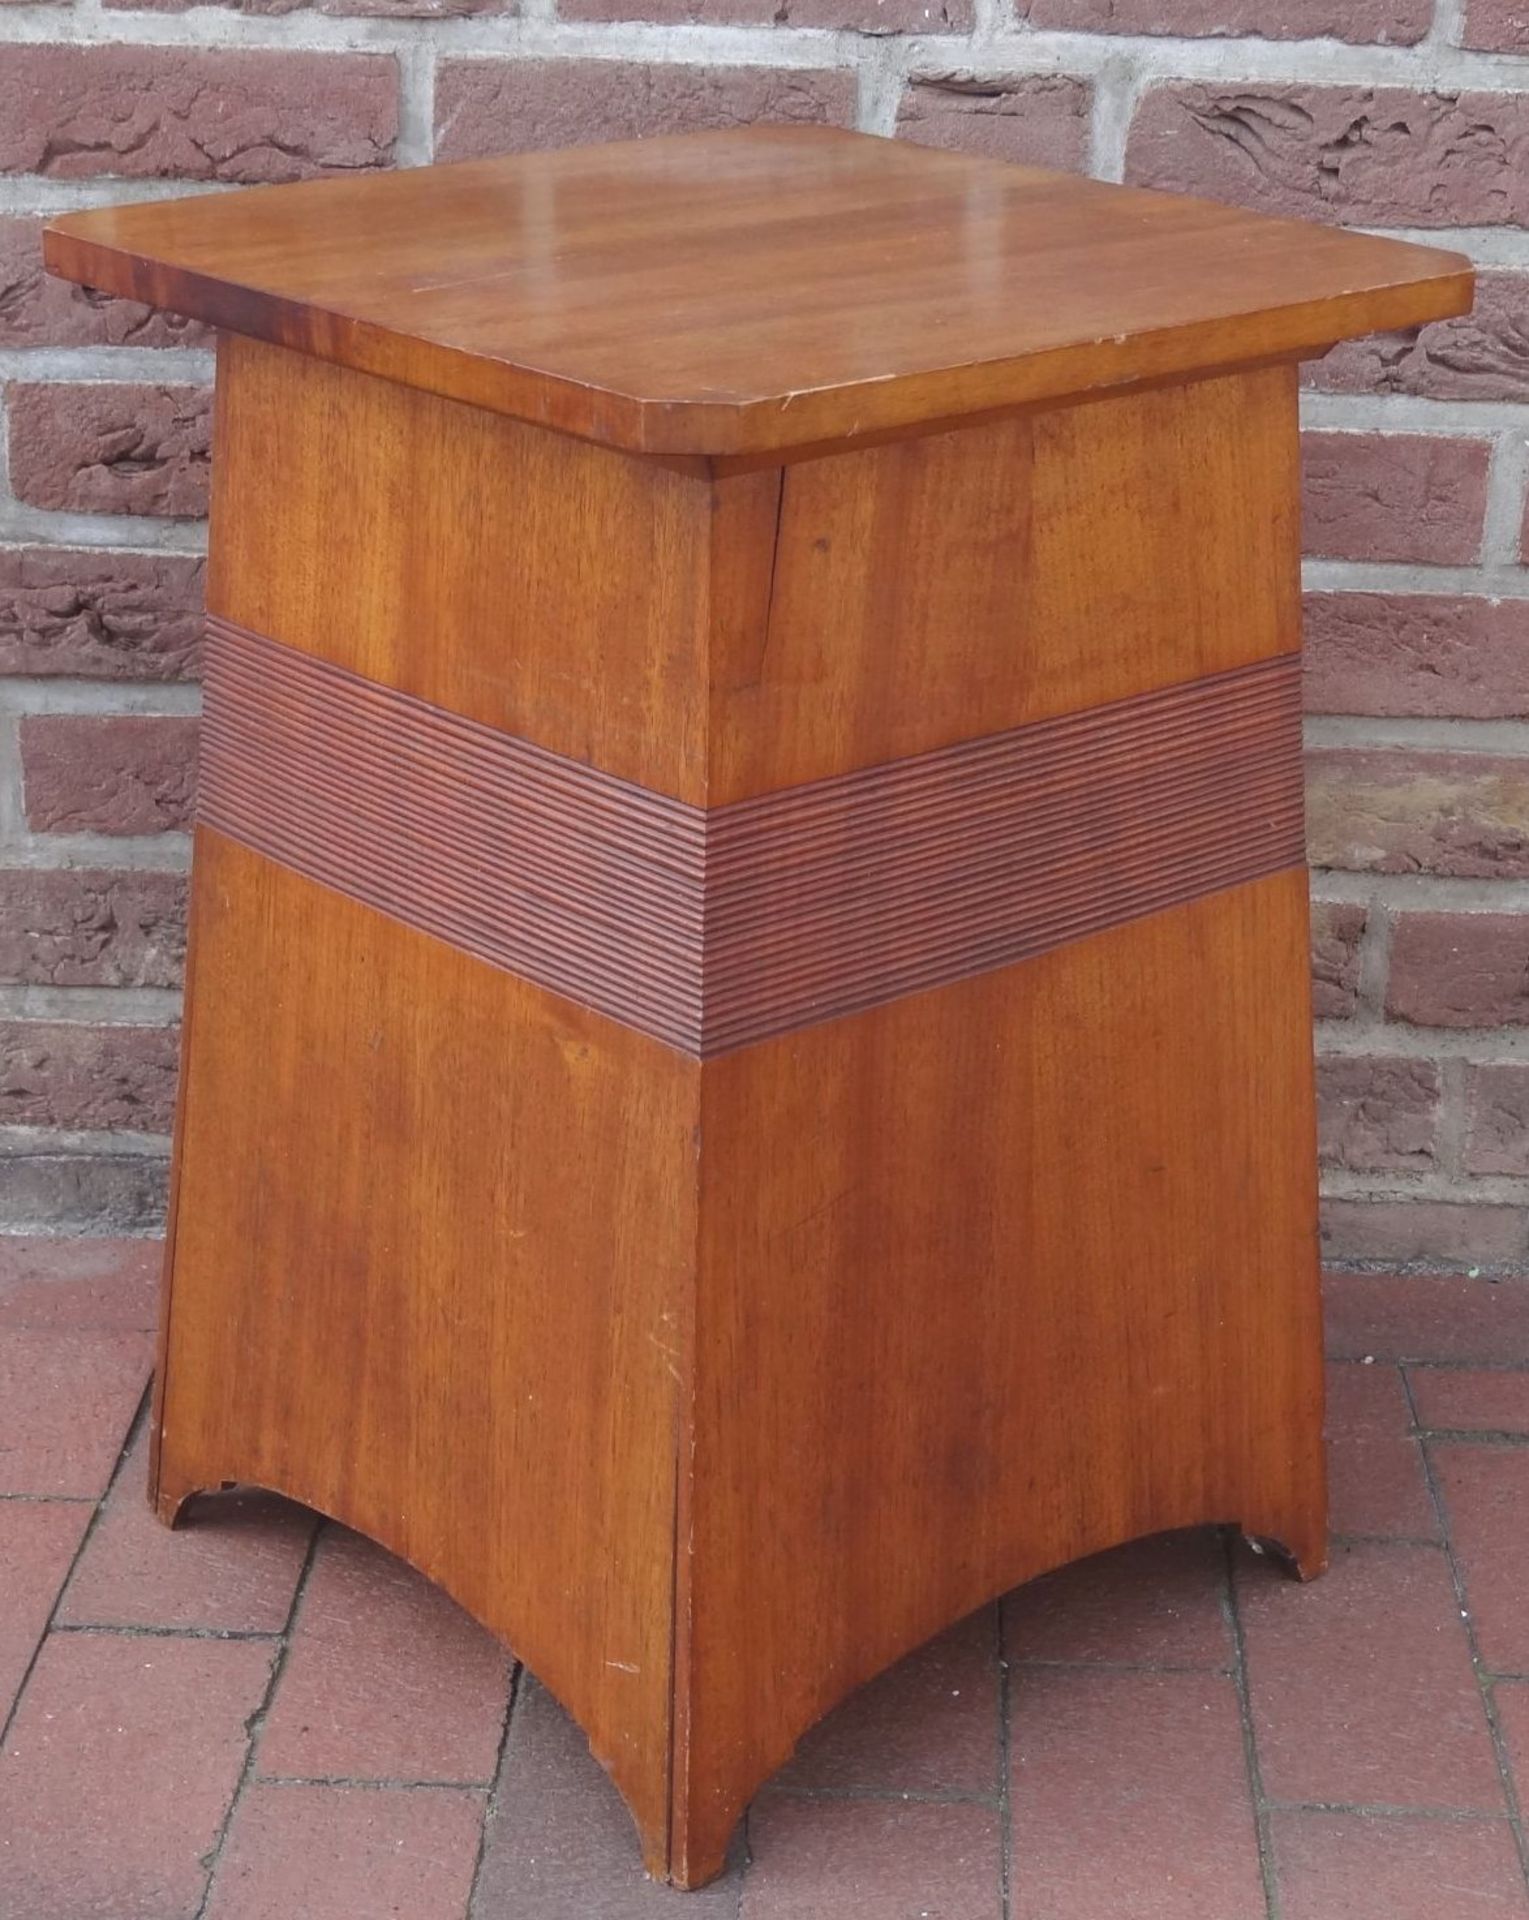 Jugendstil-Tischchen, Entwurf?, H-62 cm, 43x43 cm, Alters-u. Gebrauchsspuren, etwas rissig - Bild 4 aus 4